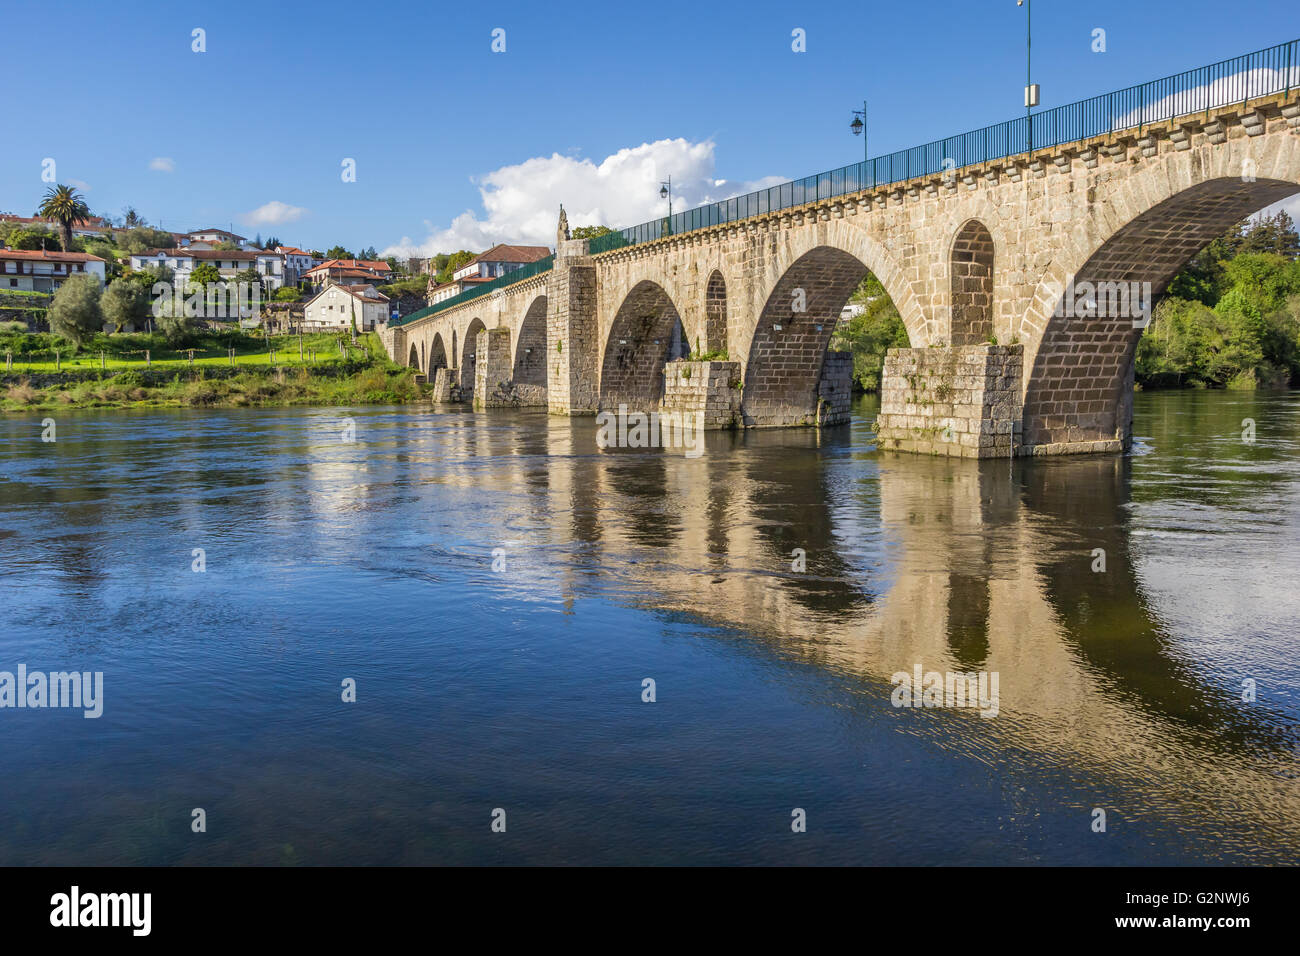 Historical roman bridge in Ponte da Barca, Portugal Stock Photo